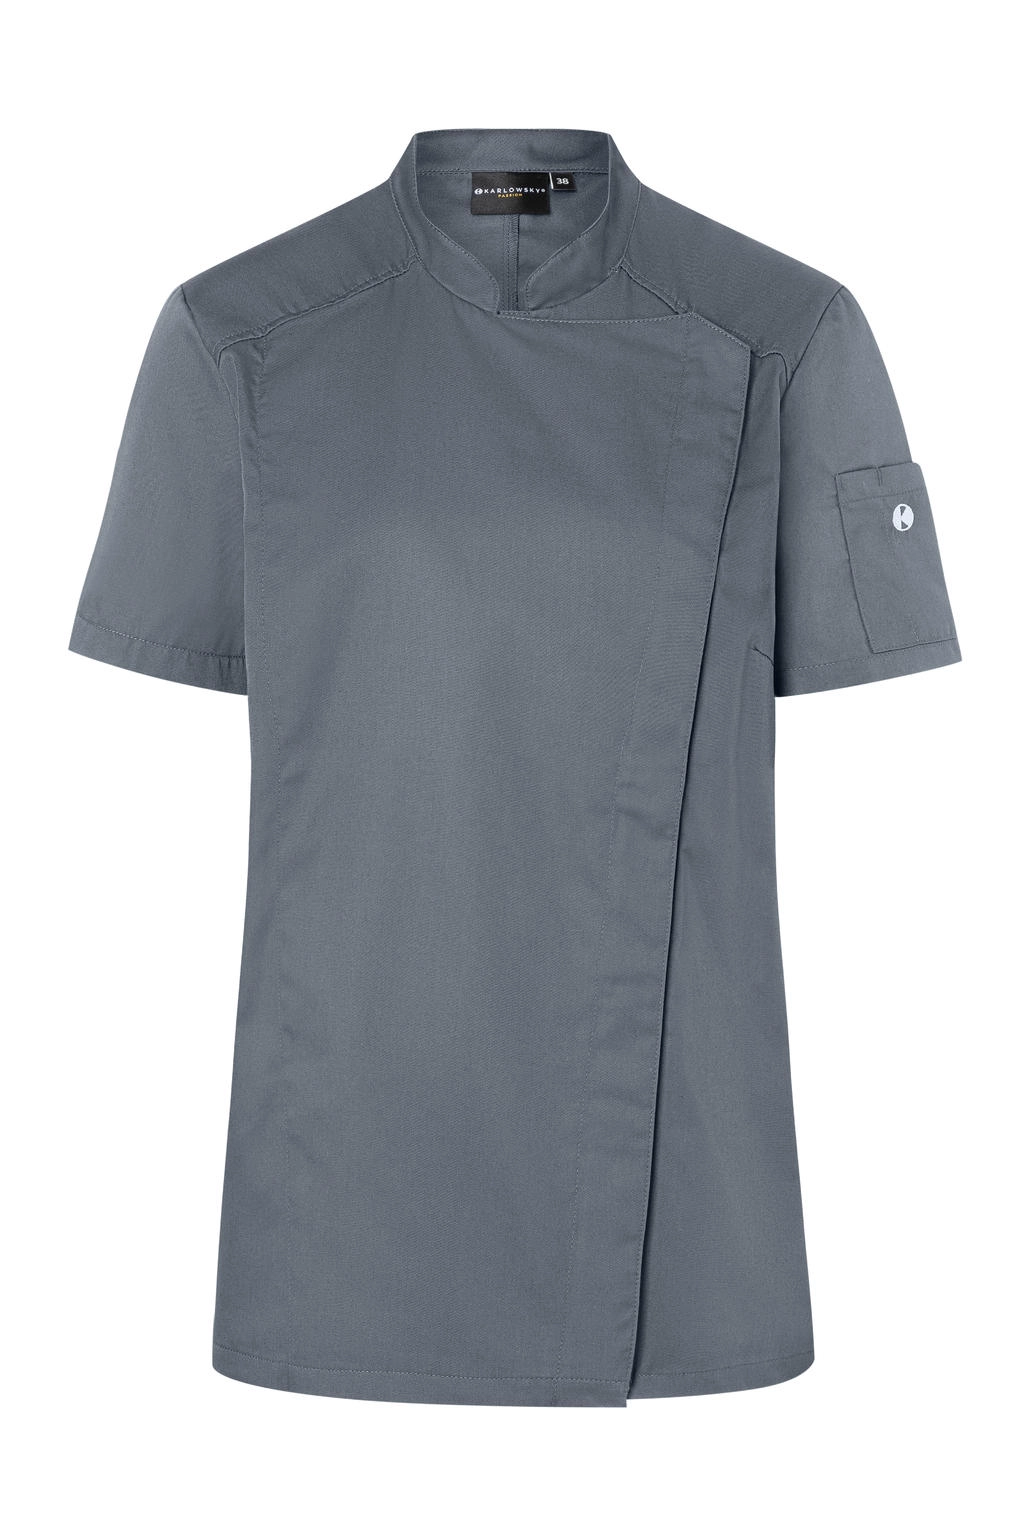 Short-Sleeve Ladies` Chef Jacket Modern-Look zum Besticken und Bedrucken in der Farbe Anthracite mit Ihren Logo, Schriftzug oder Motiv.